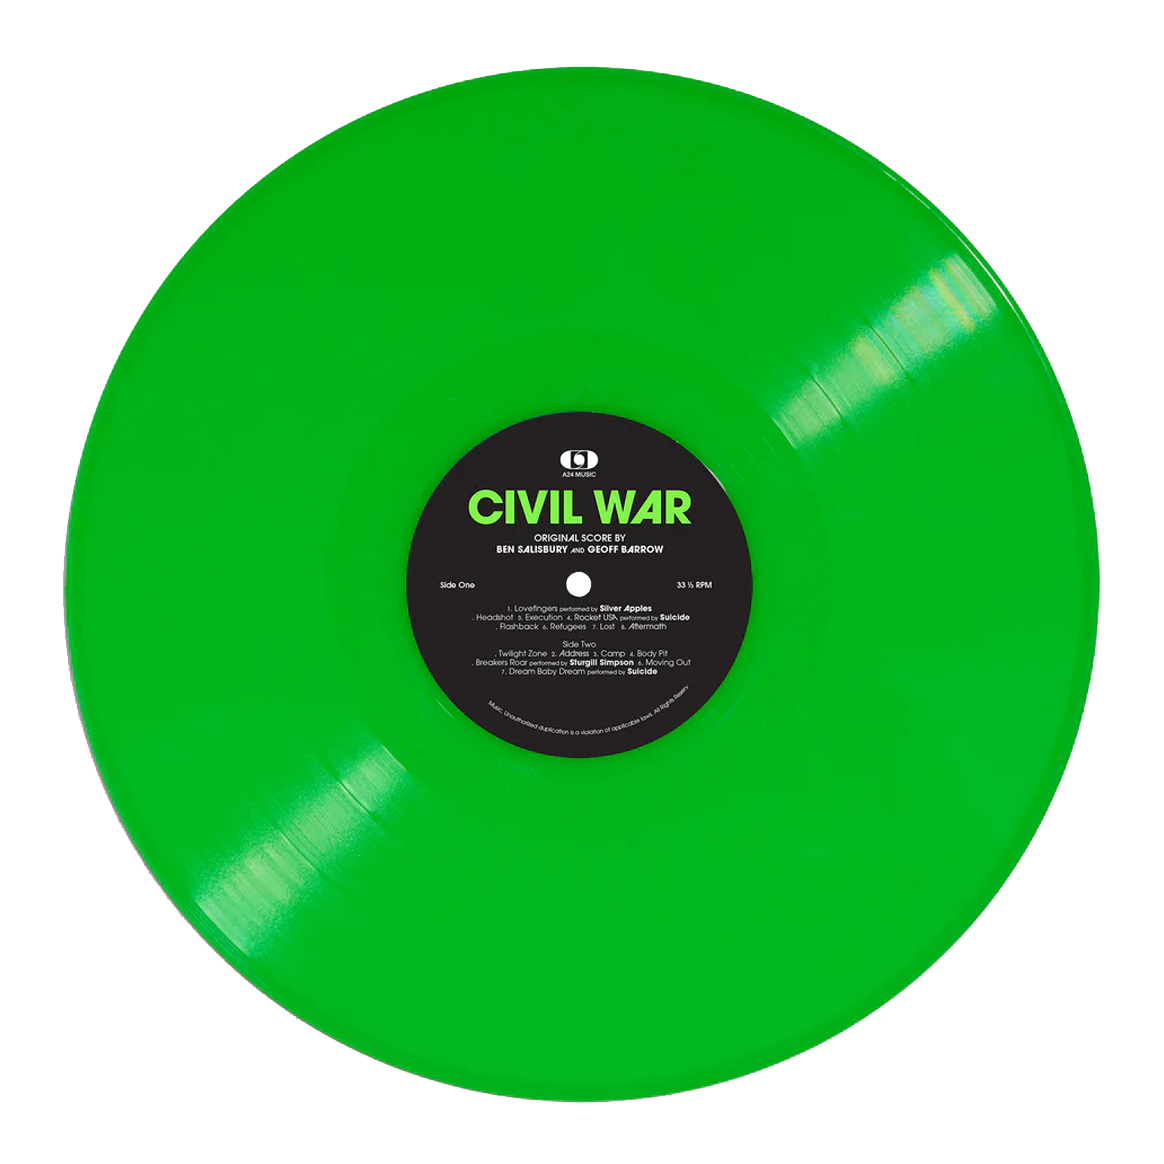 Ben Salisbury, Geoff Barrow - Civil War (Original Score): Limited Neon Green Vinyl LP